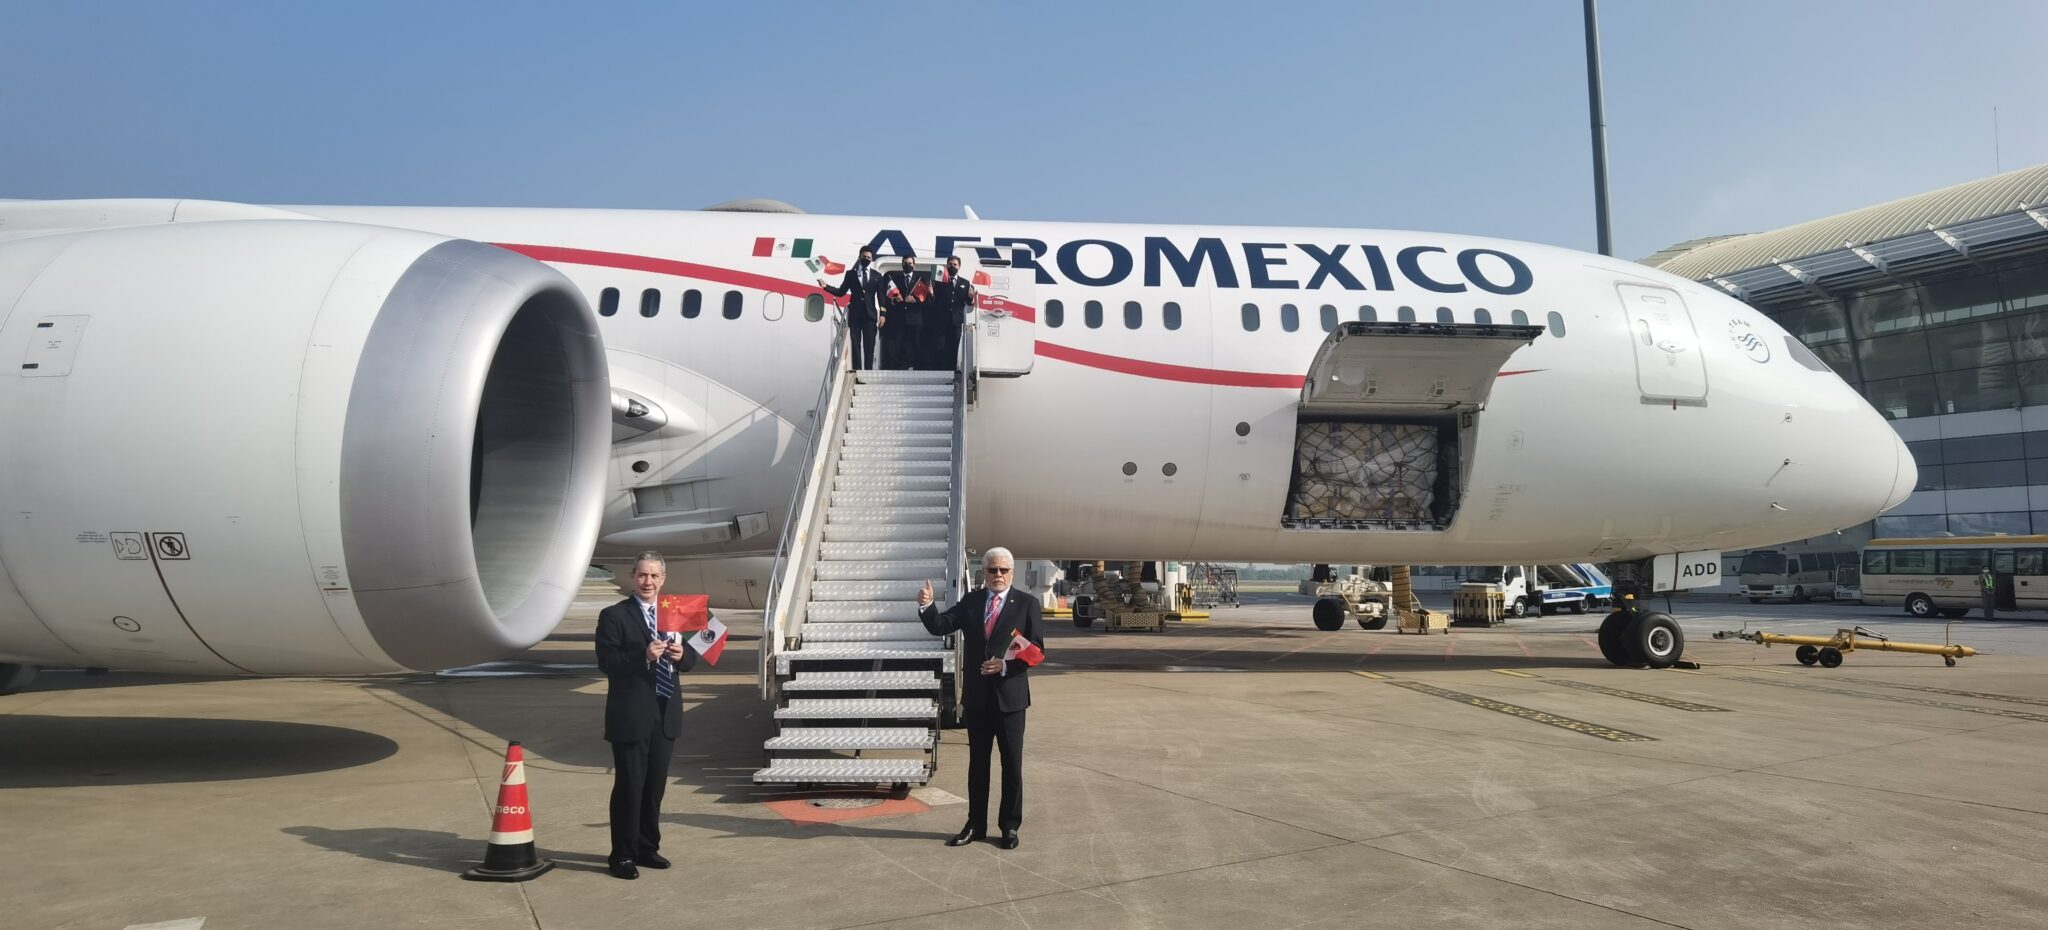 美国下调墨西哥航空安全评级 墨方担忧影响经济复苏